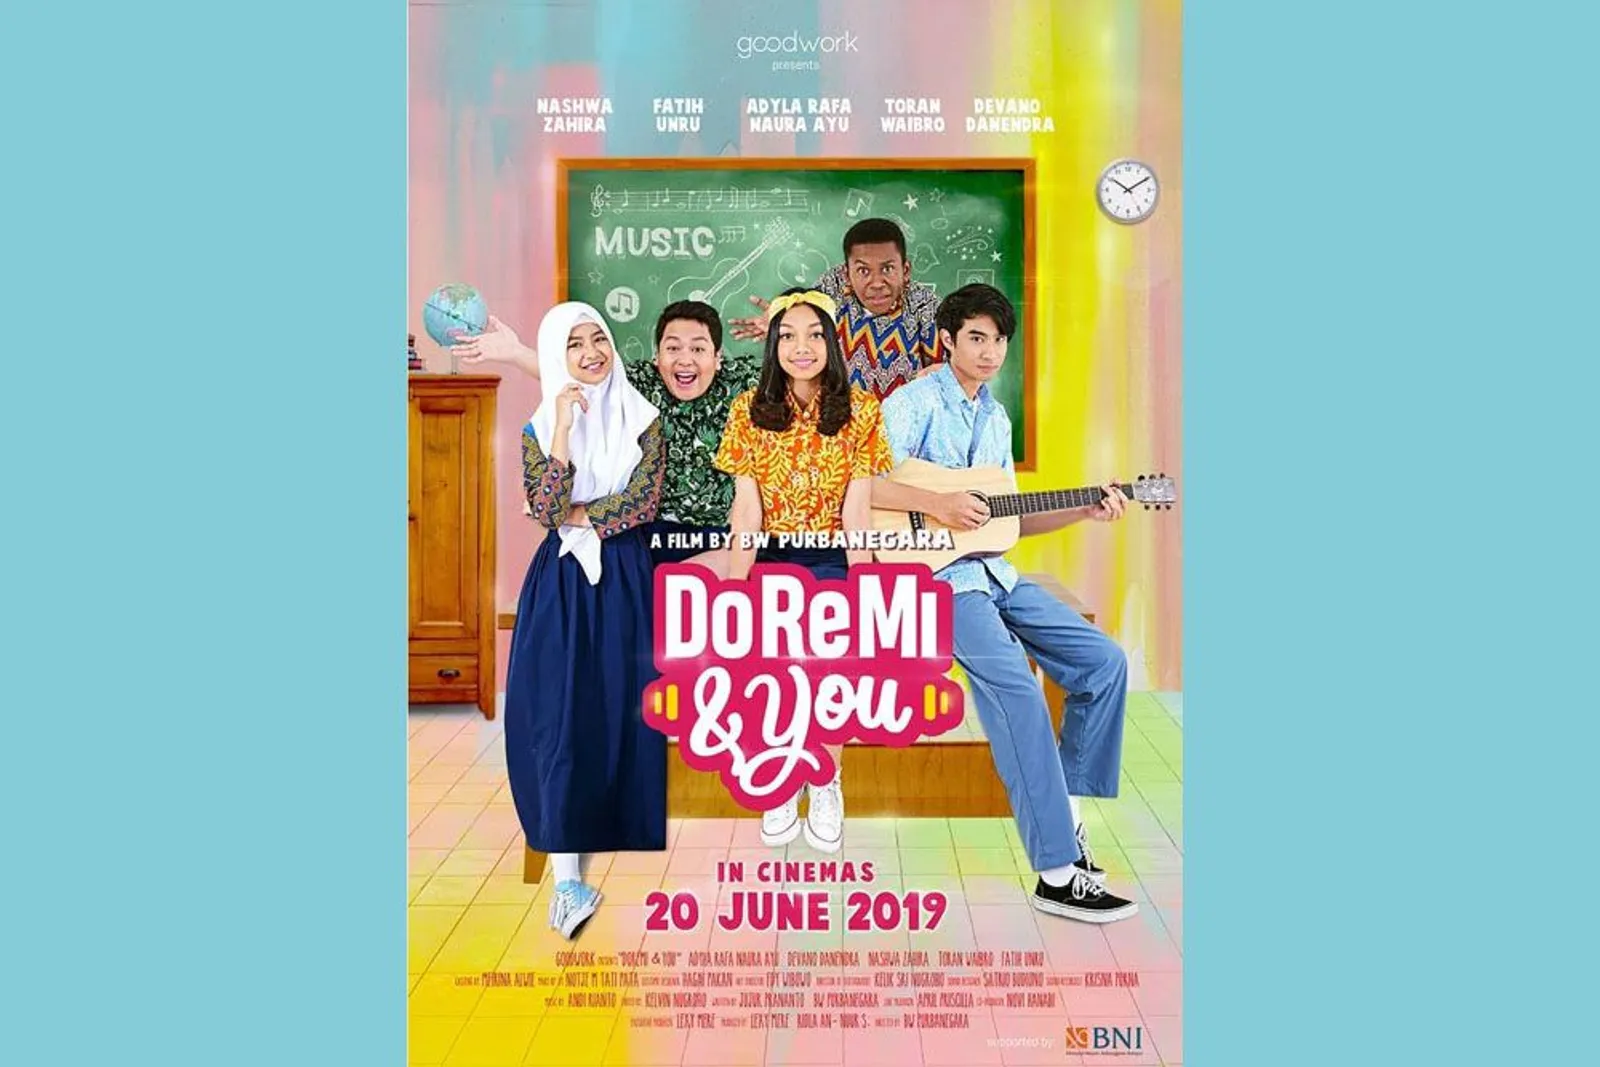 DoReMi & You, Film Remaja yang akan Temani Liburan Sekolah Nanti